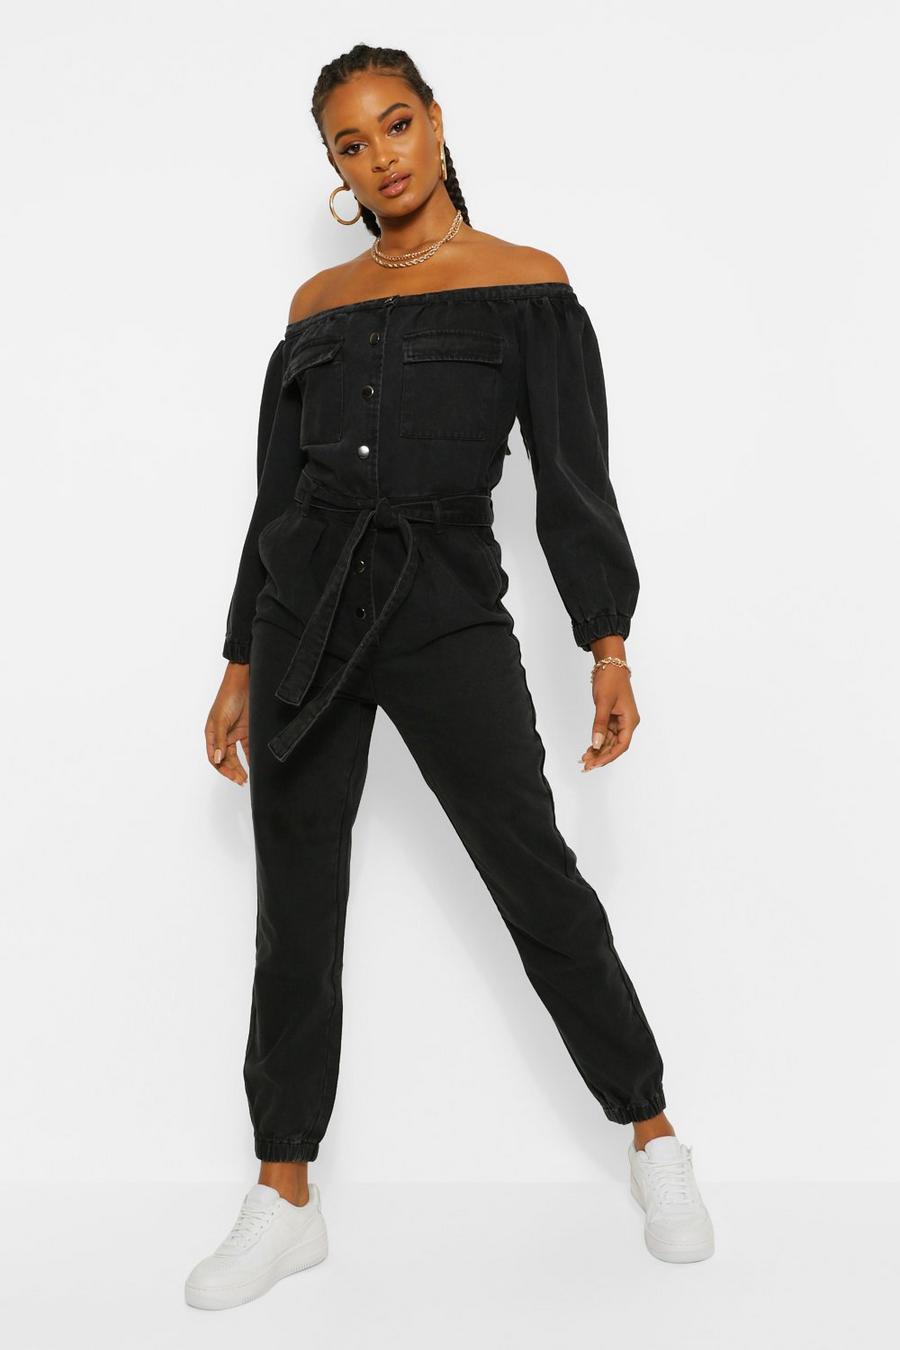 שחור דהוי אוברול מבד ג'ינס עם כתפיים חשופות וחגורה  image number 1